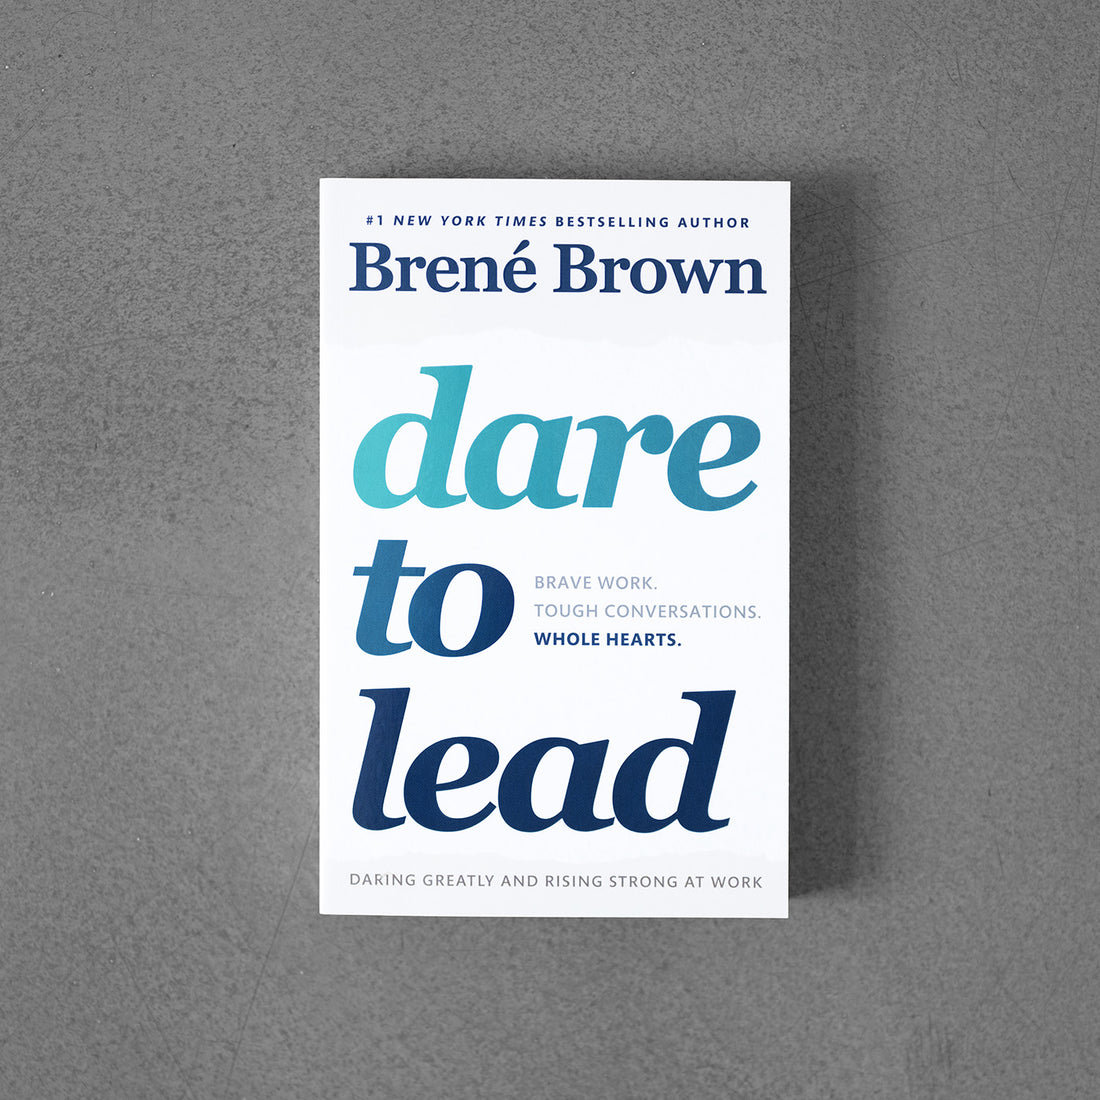 Odważ się przewodzić: odważna praca. Trudne rozmowy. Całe serca – Brene Brown.